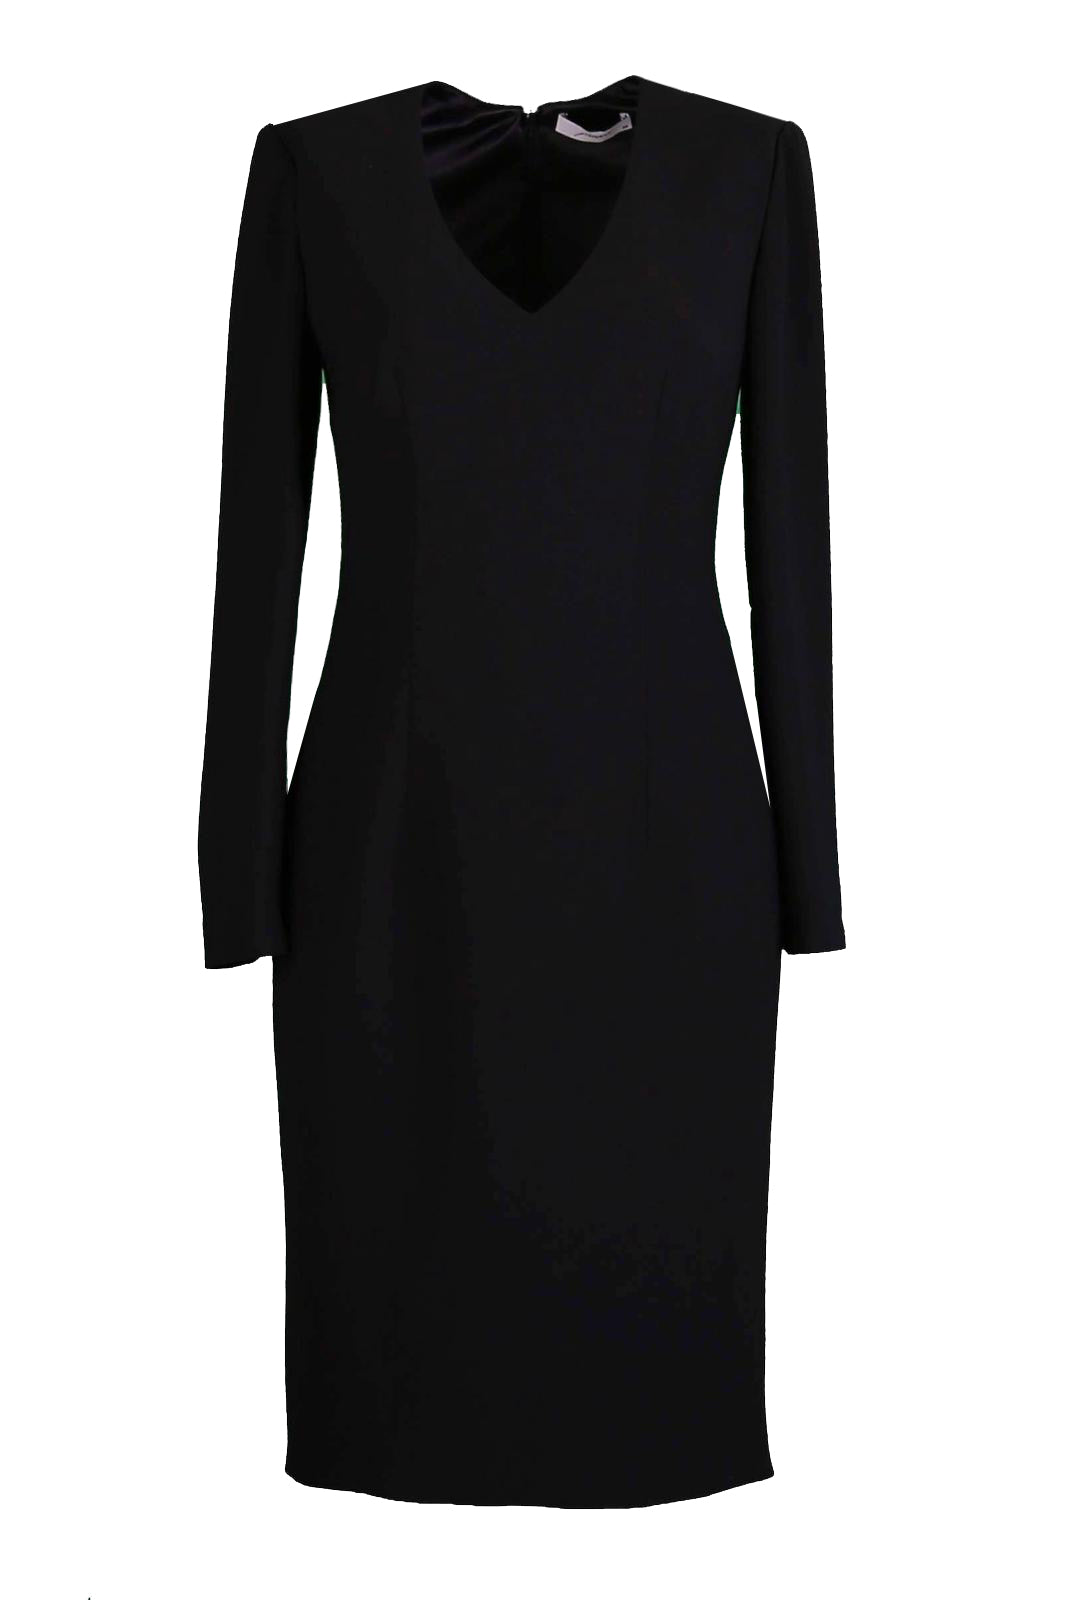 Belle Siyah V Yakalı Uzun Kollu Kalem Elbise